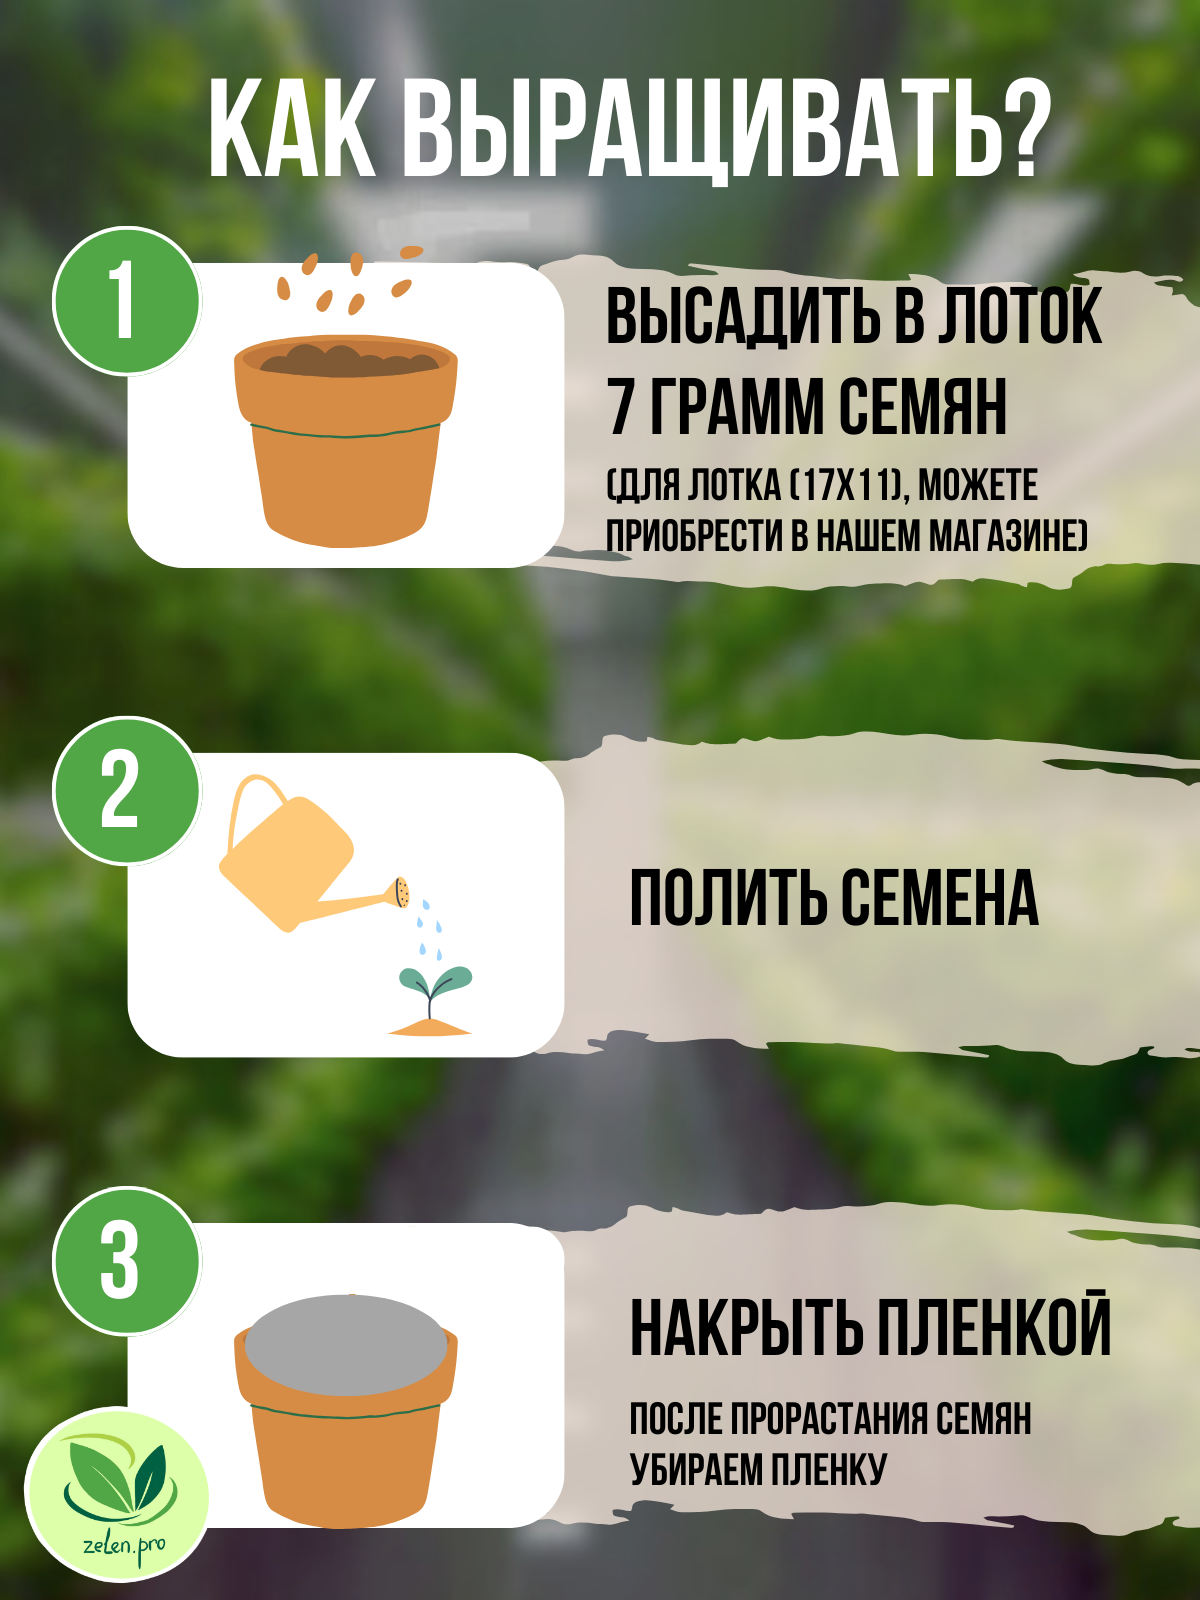 Семена брокколи для выращивания микрозелени. 100 грамм с инструкцией по выращиванию